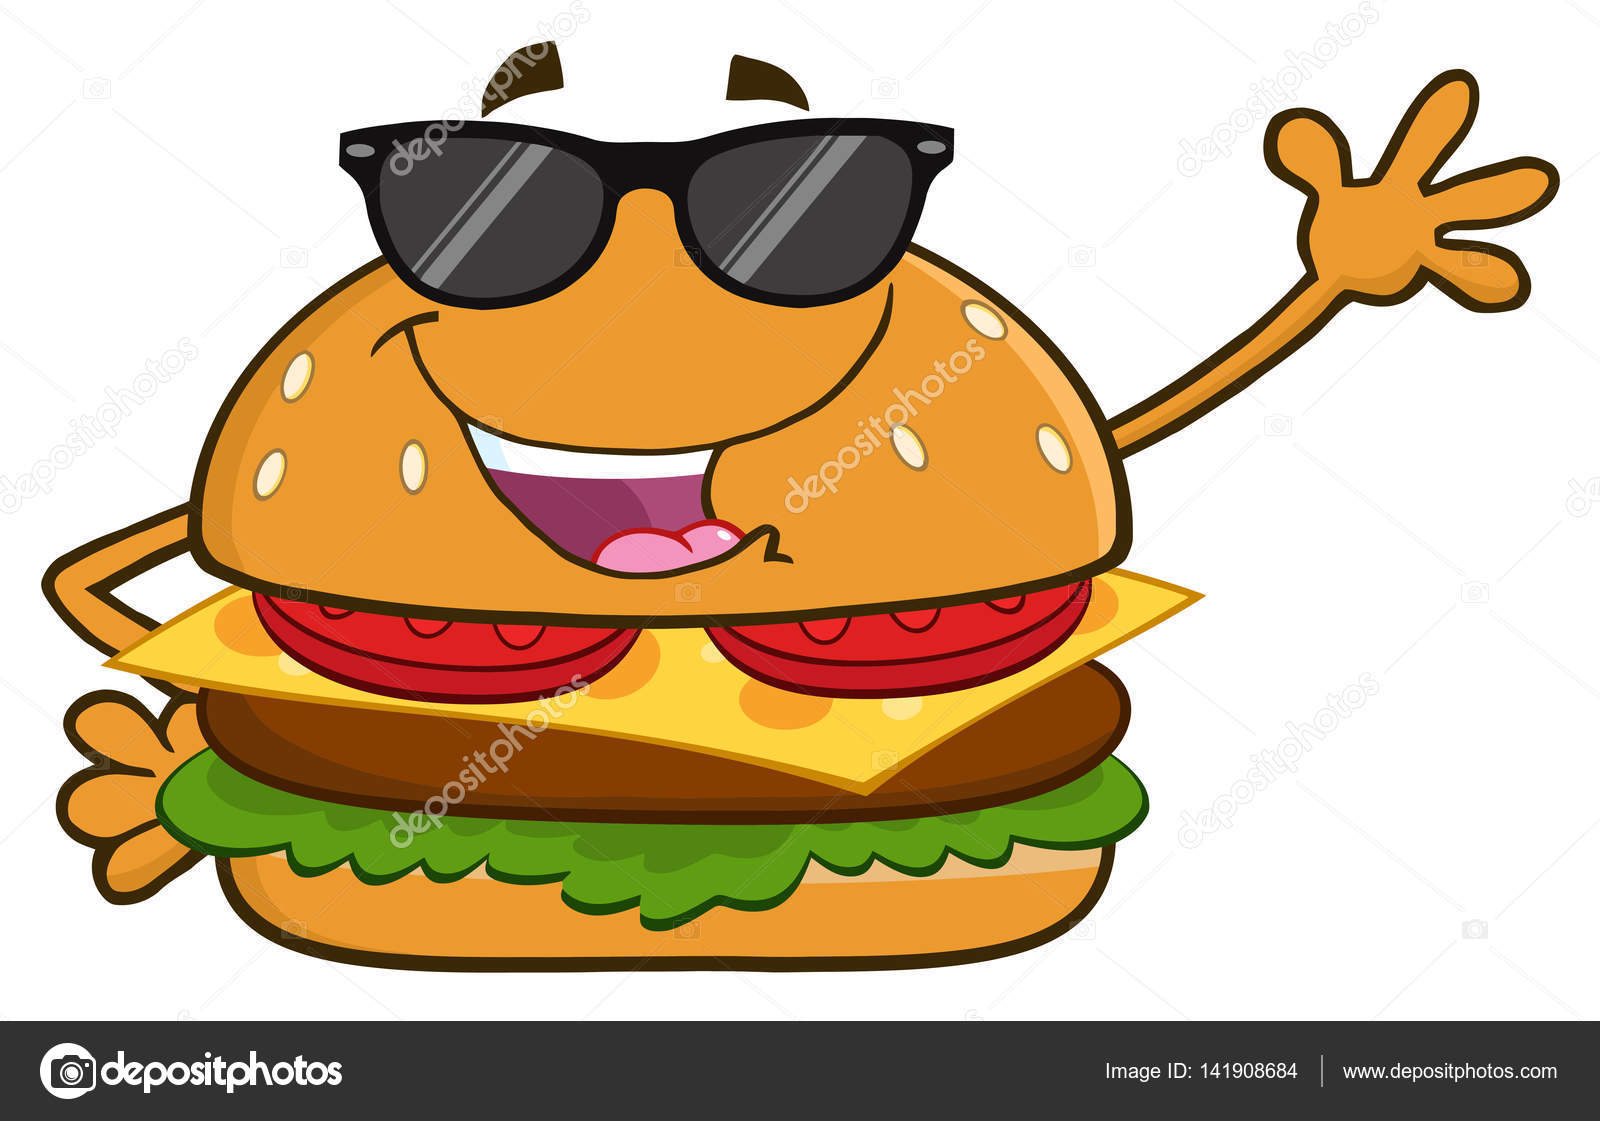 Burger cartoon Vector Art Stock Images | Depositphotos